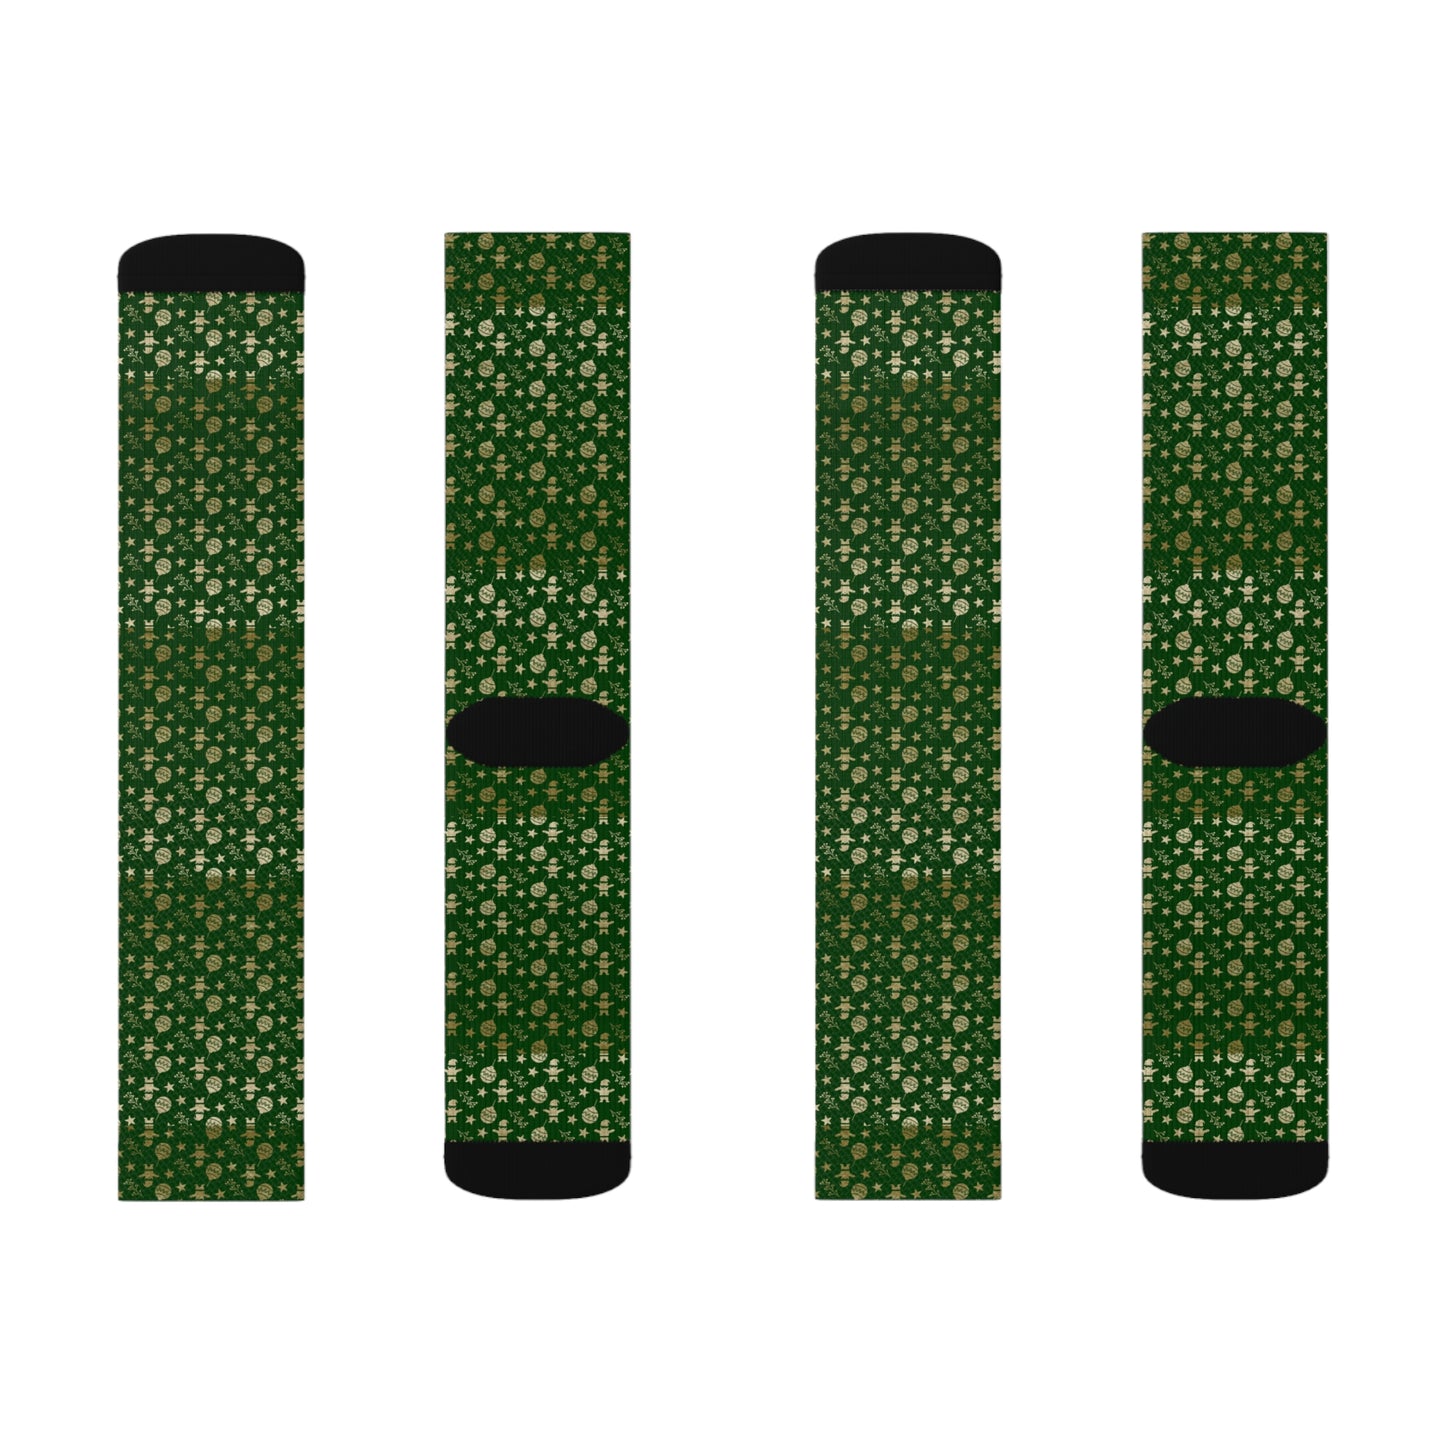 Christmas Novelty Socks, Green Casual Funny Fun Socks for Men & Women Christmas Gift